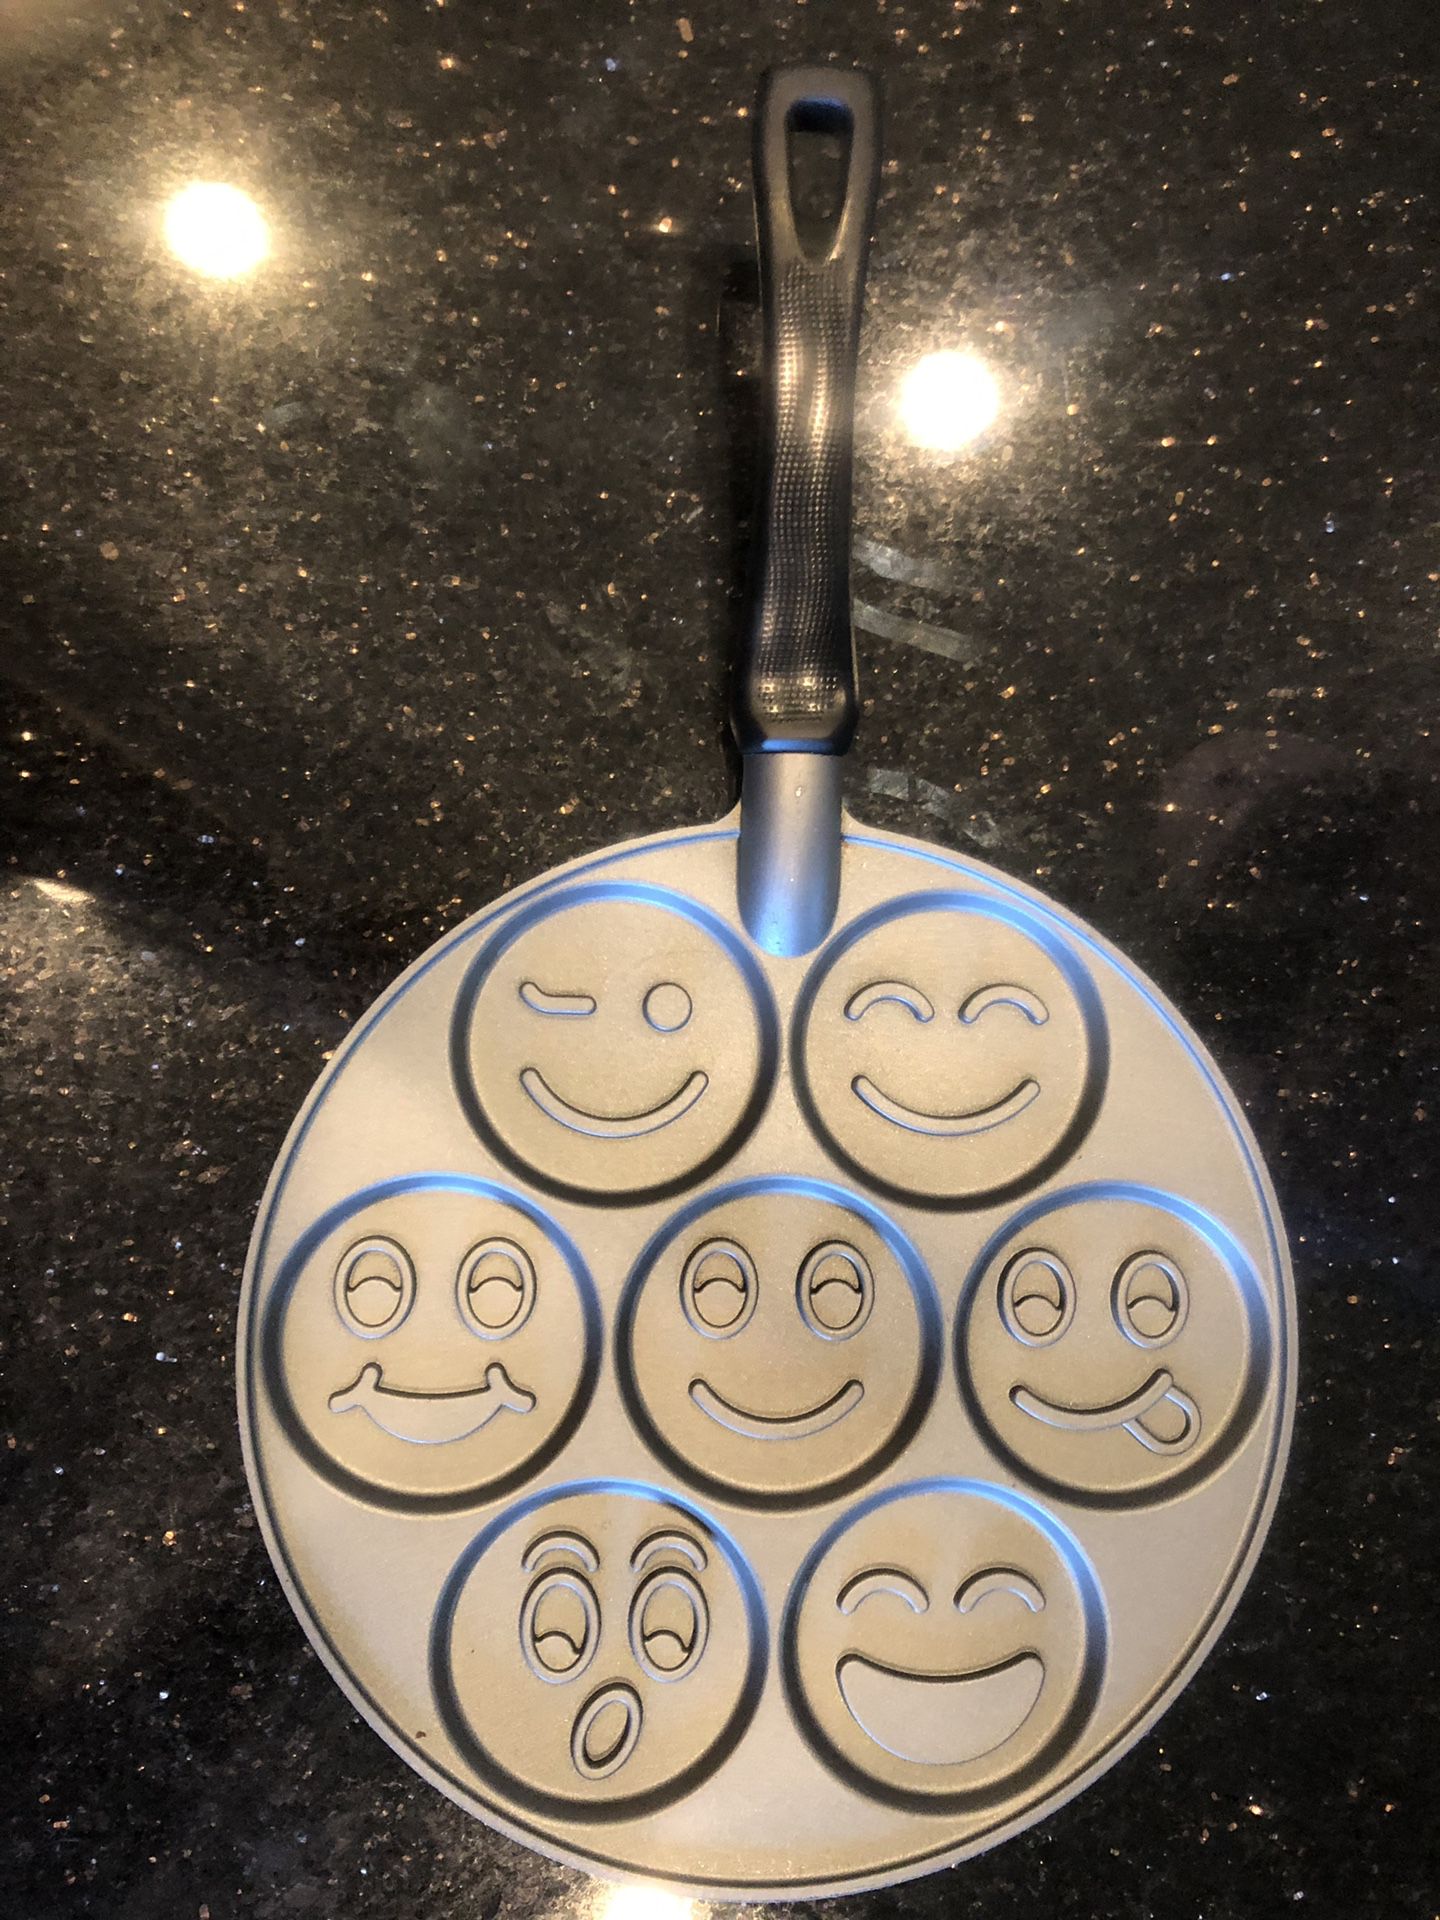 Silly Face pancake pan.